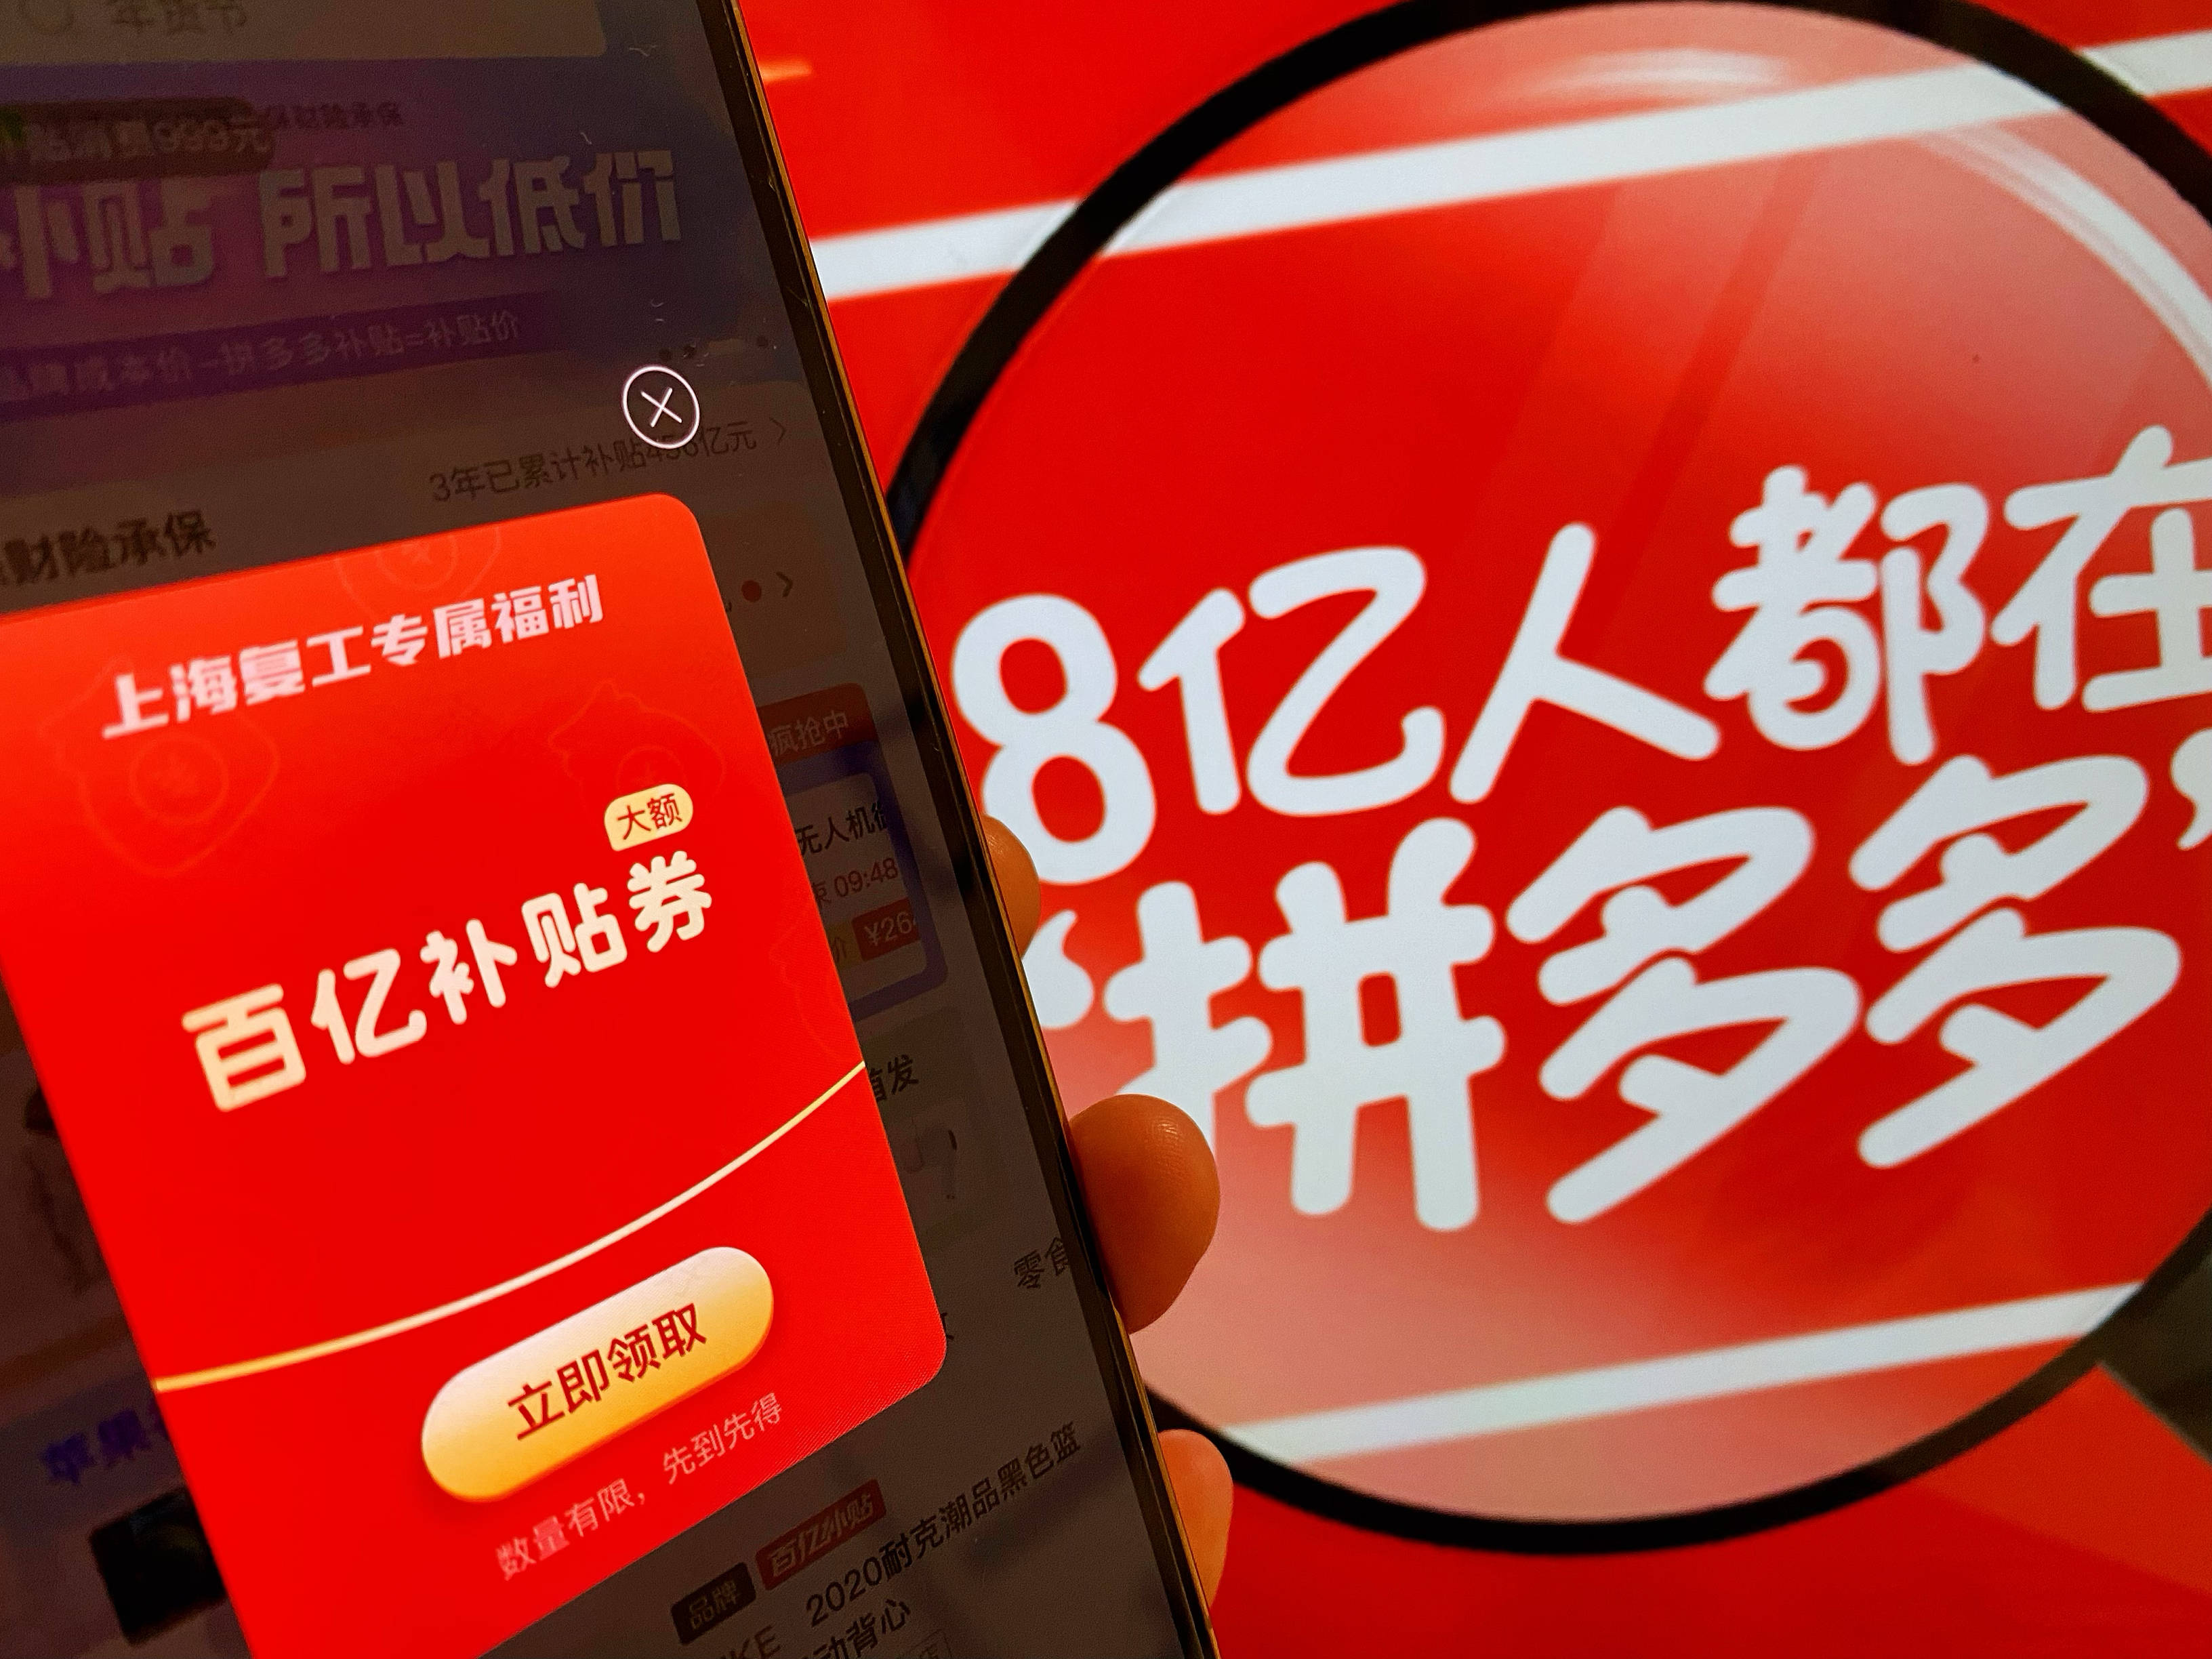 即日起至6月18日,上海用户可在拼多多app首页弹窗或百亿补贴频道